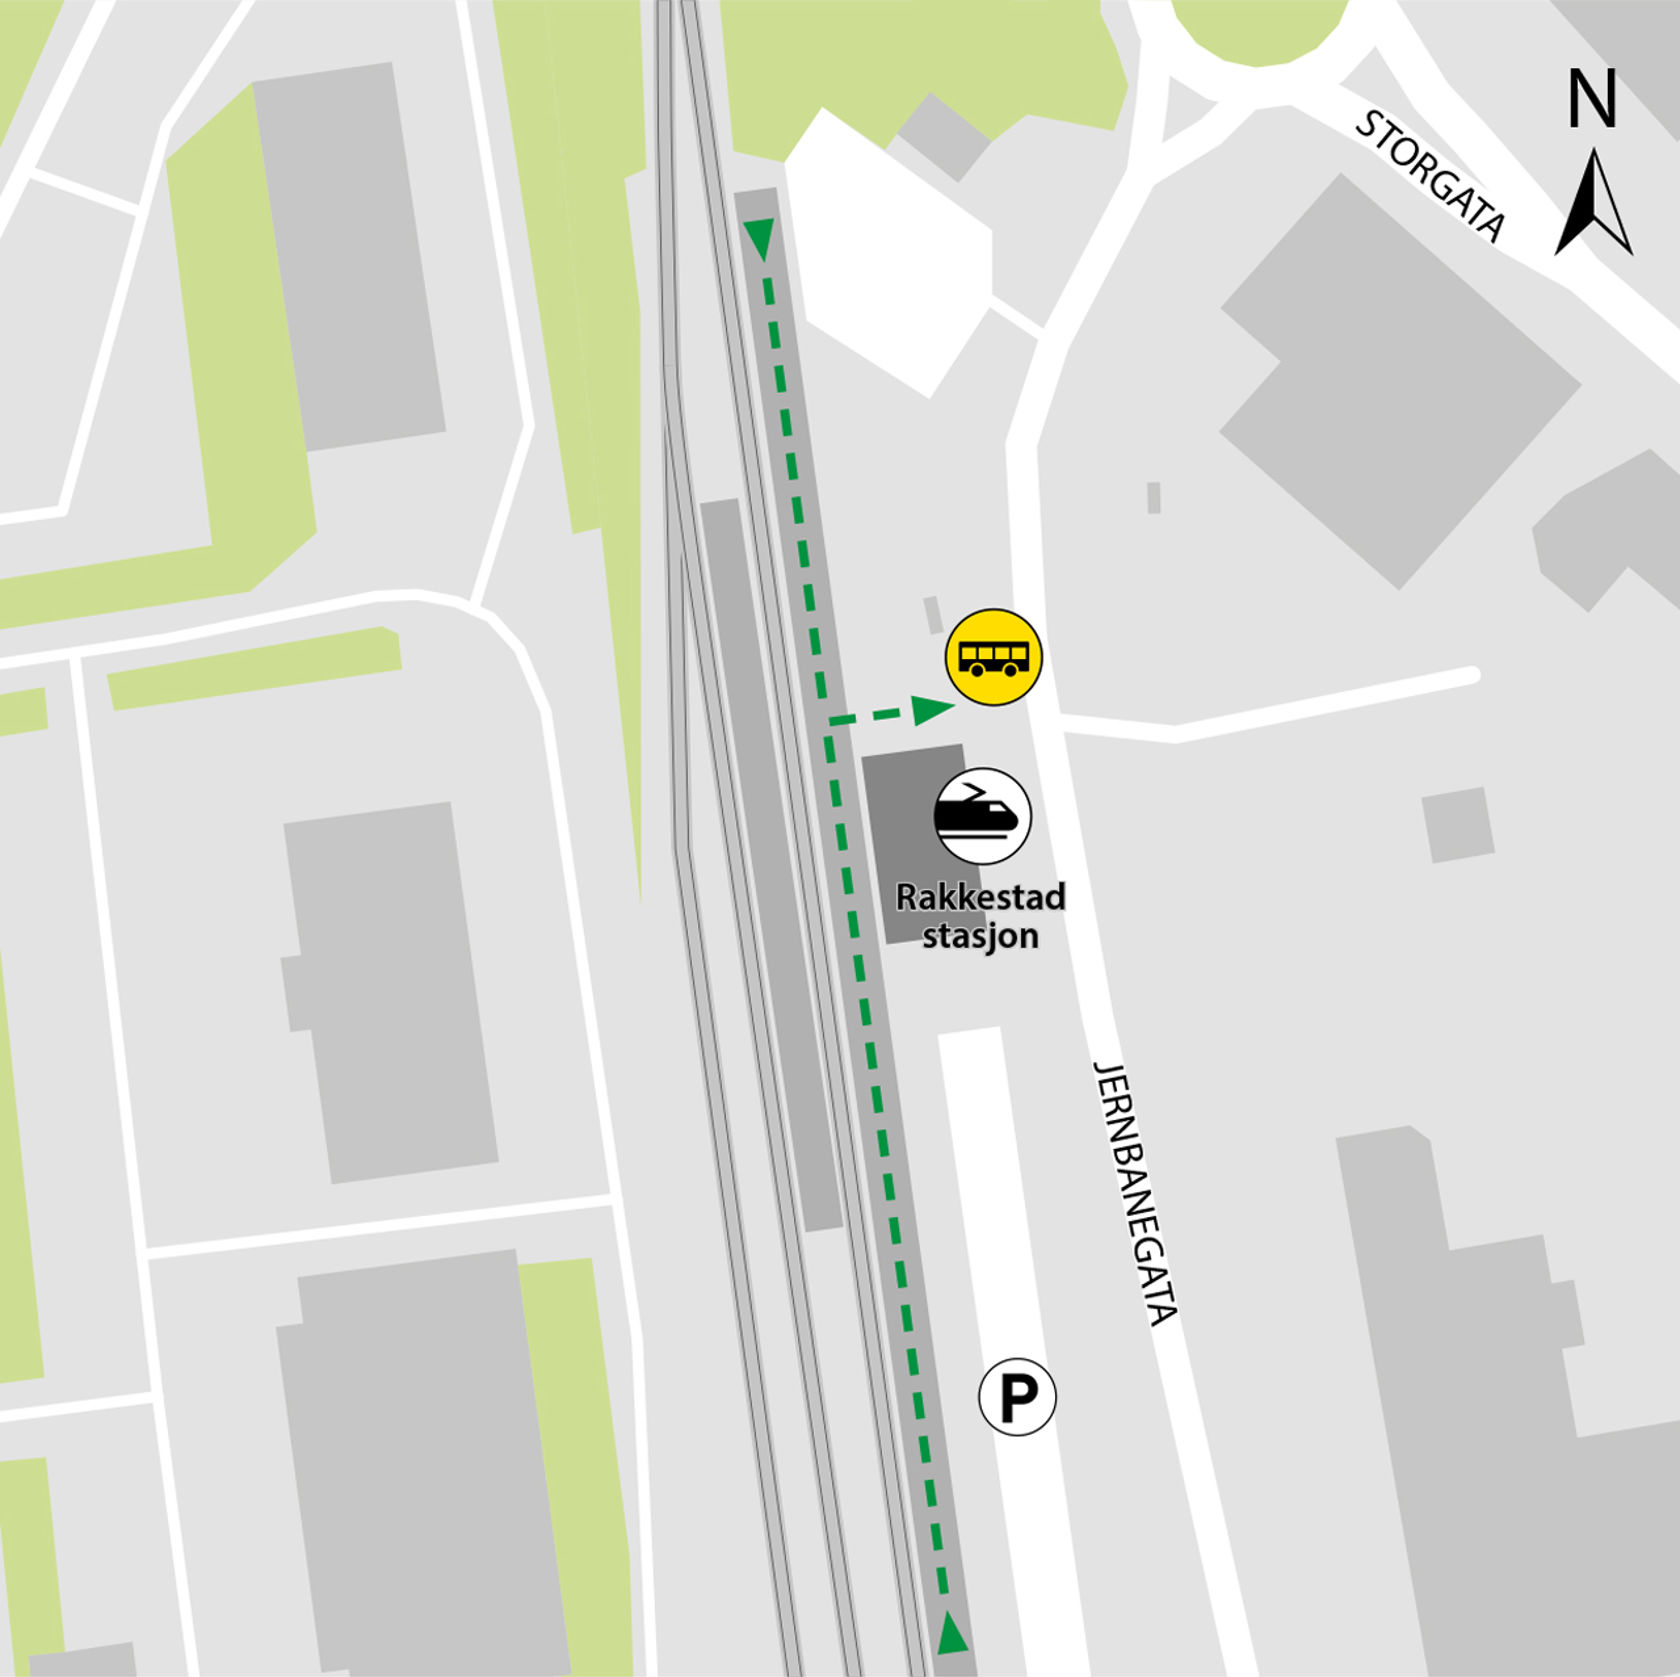 Kartet viser at bussene kjører fra bussholdeplassen Rakkestad stasjon.